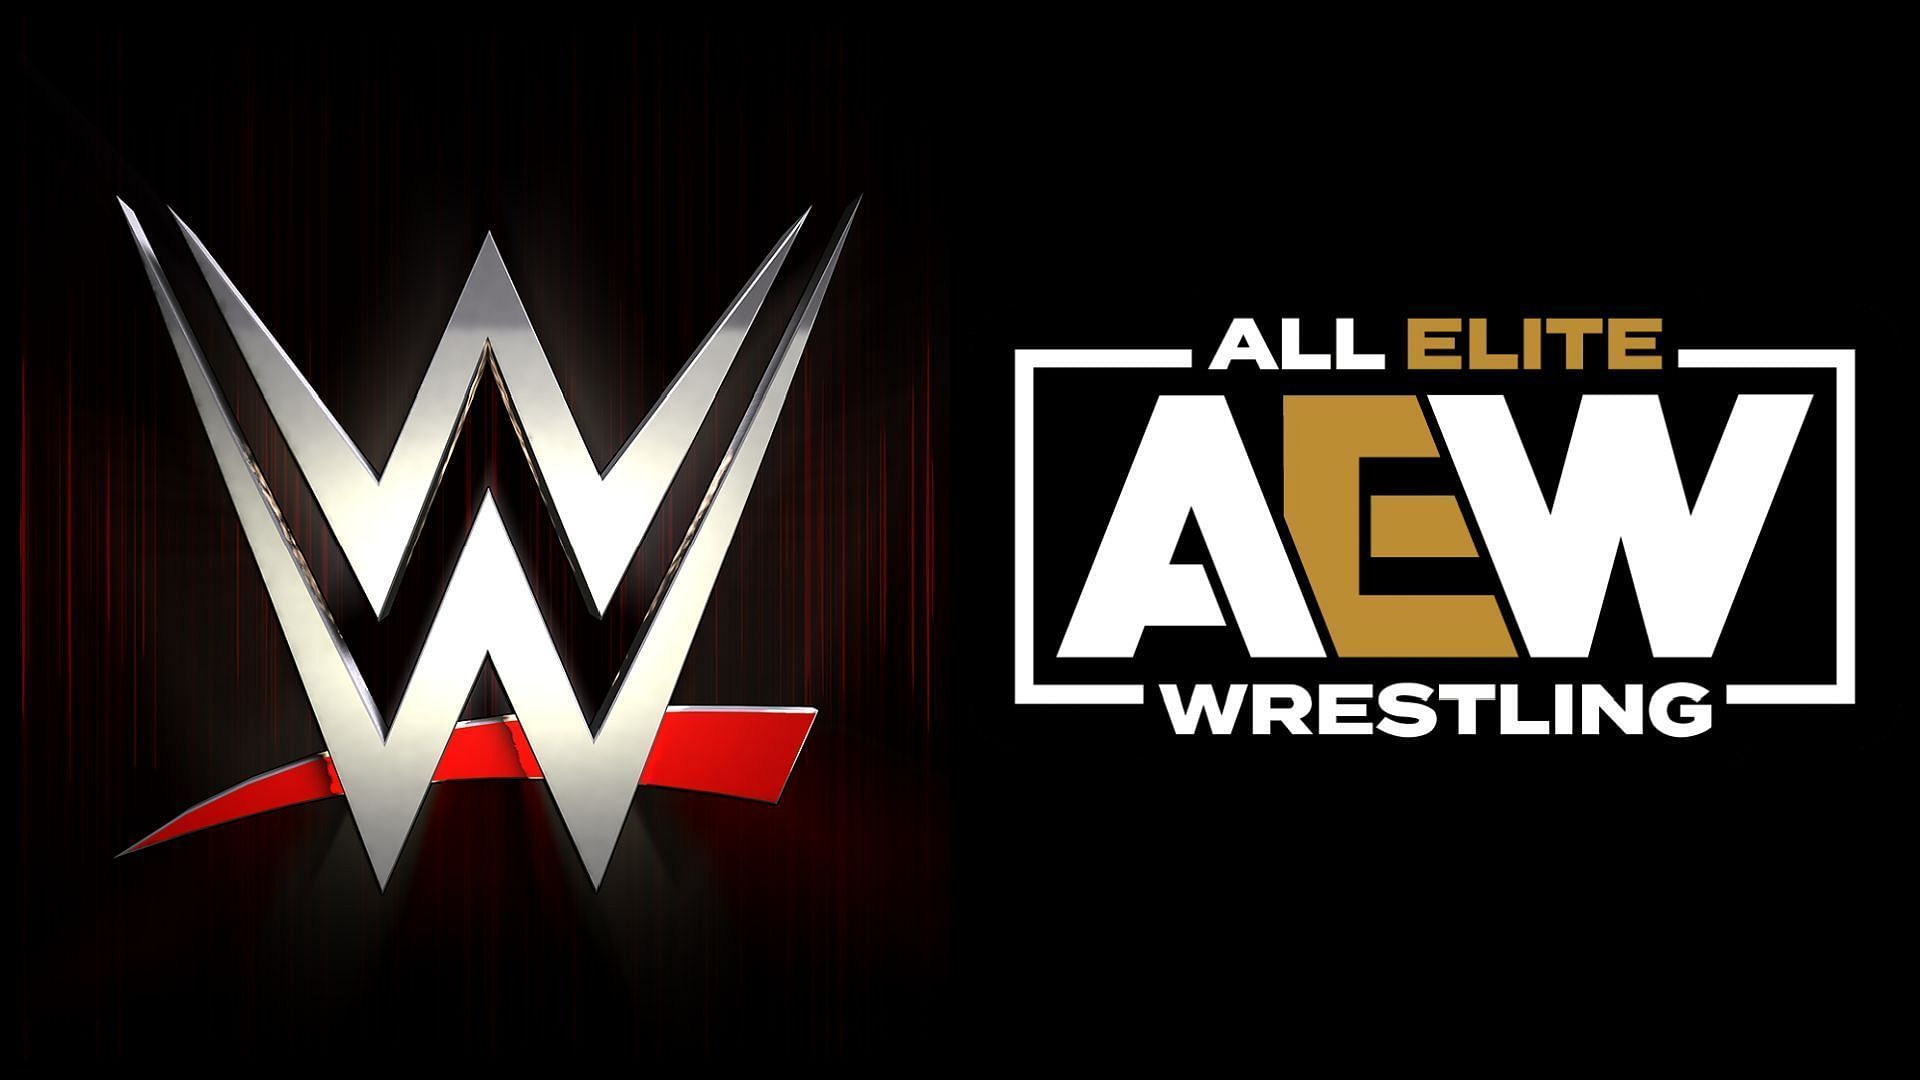 AEW सुपरस्टार ब्रायन केज के WWE में आने की अफवाहें चल रही थी 